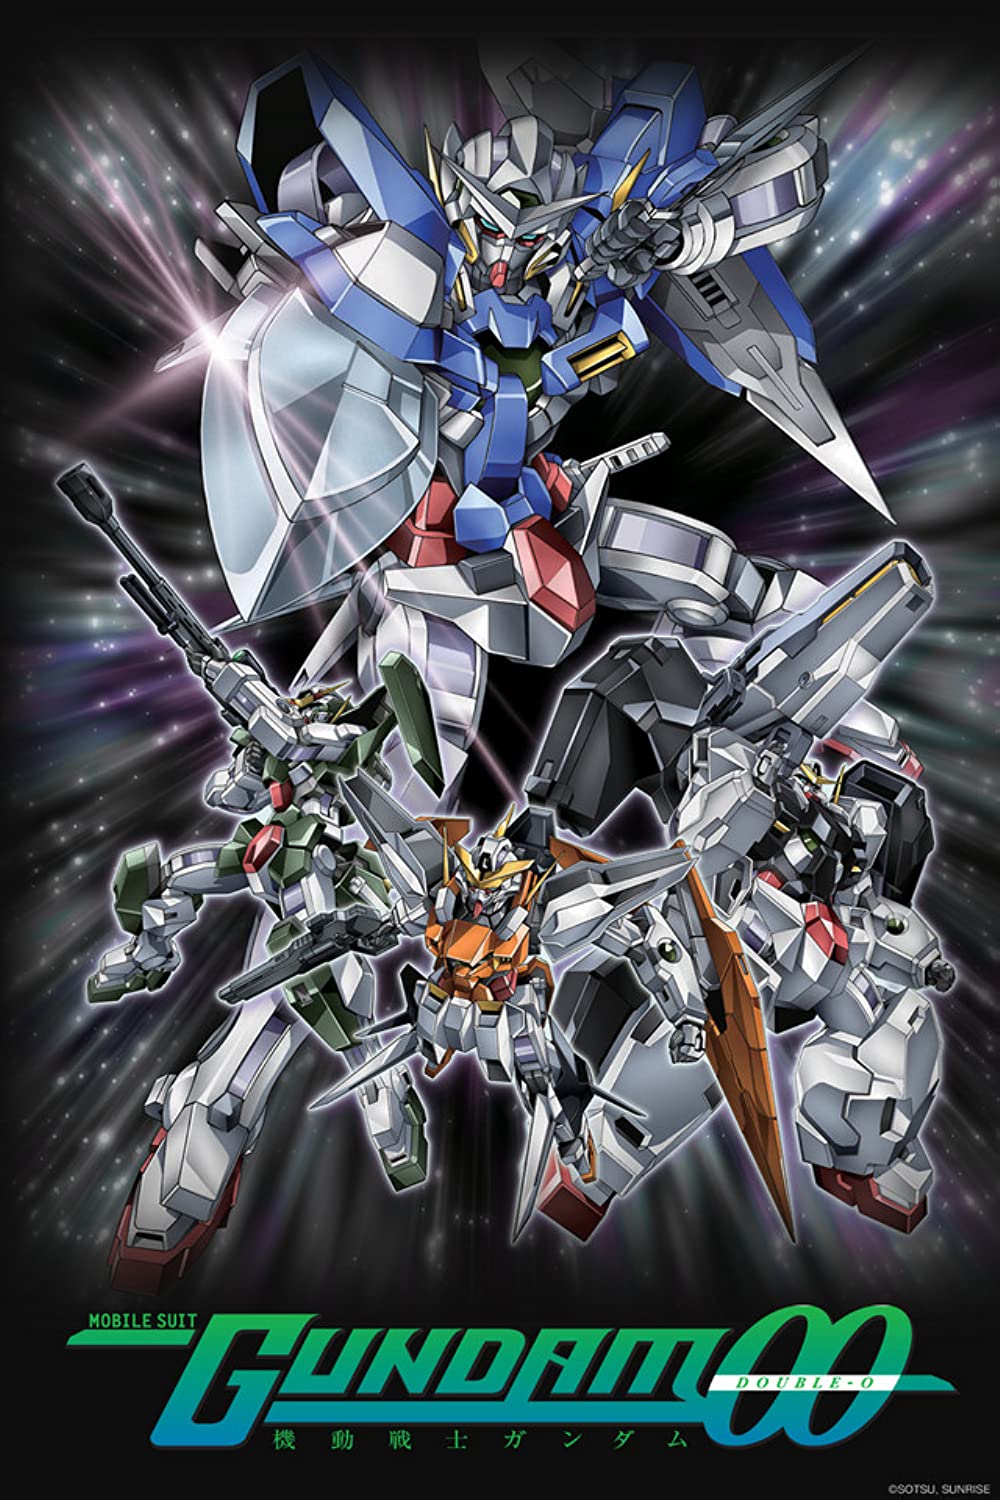 ดูหนังออนไลน์ฟรี Mobile Suit Gundam 00 กันดั้มดับเบิลโอ